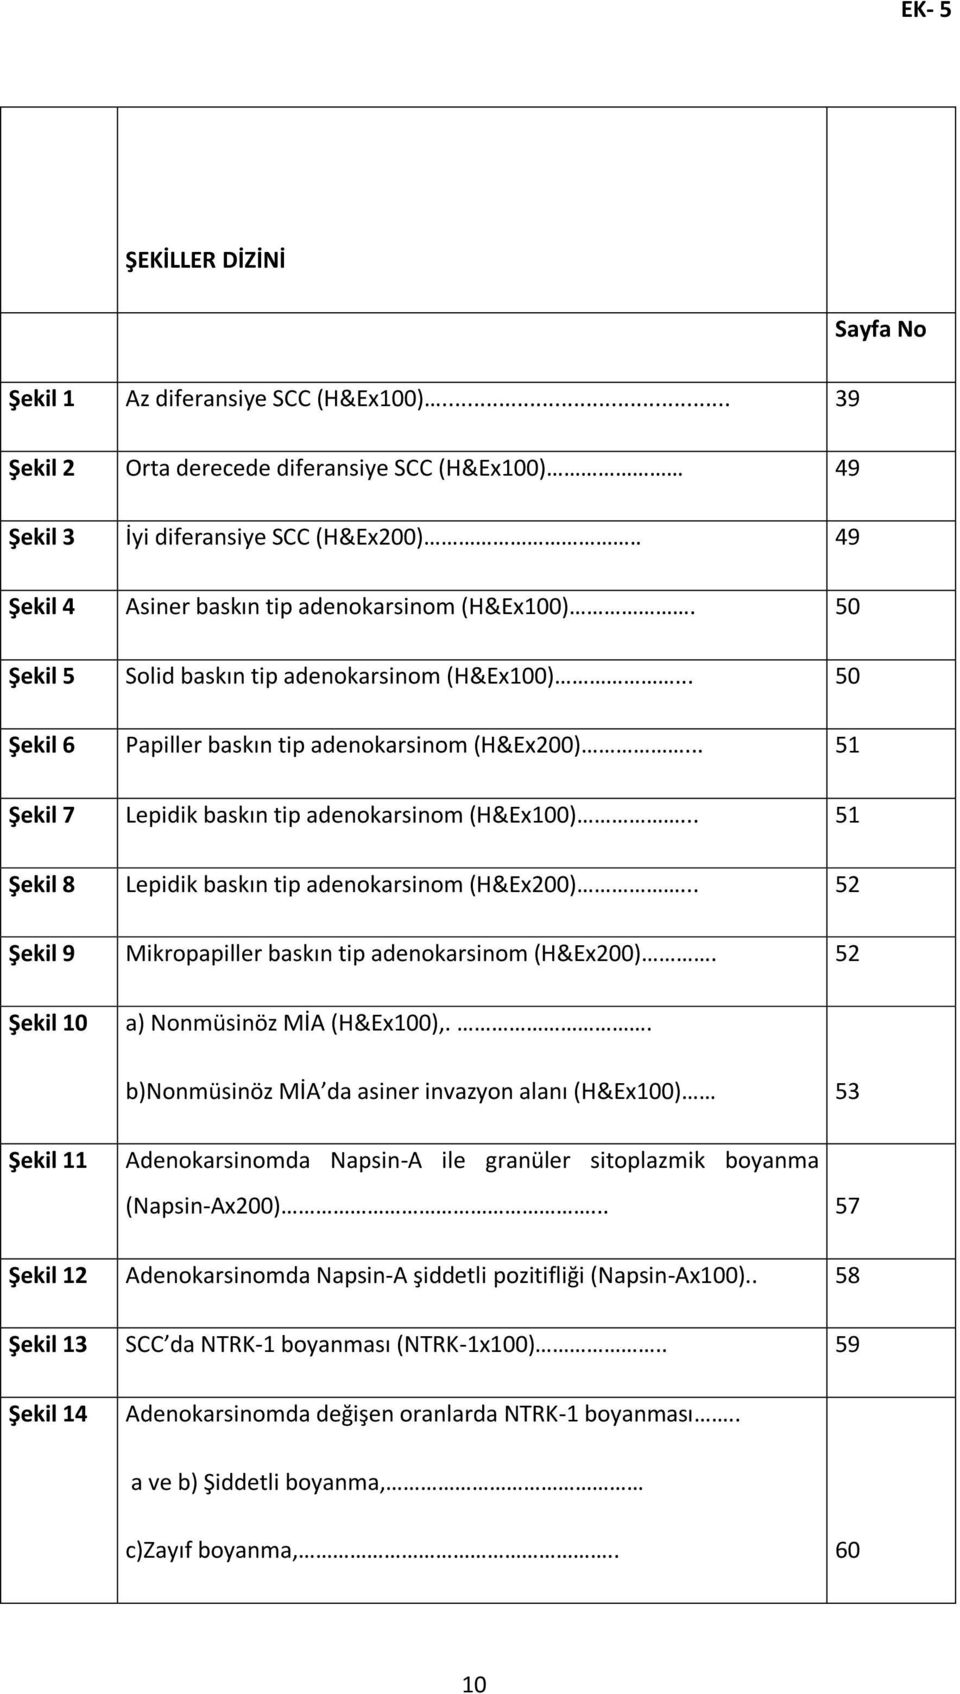 .. 51 Şekil 7 Lepidik baskın tip adenokarsinom (H&Ex100)... 51 Şekil 8 Lepidik baskın tip adenokarsinom (H&Ex200)... 52 Şekil 9 Mikropapiller baskın tip adenokarsinom (H&Ex200).